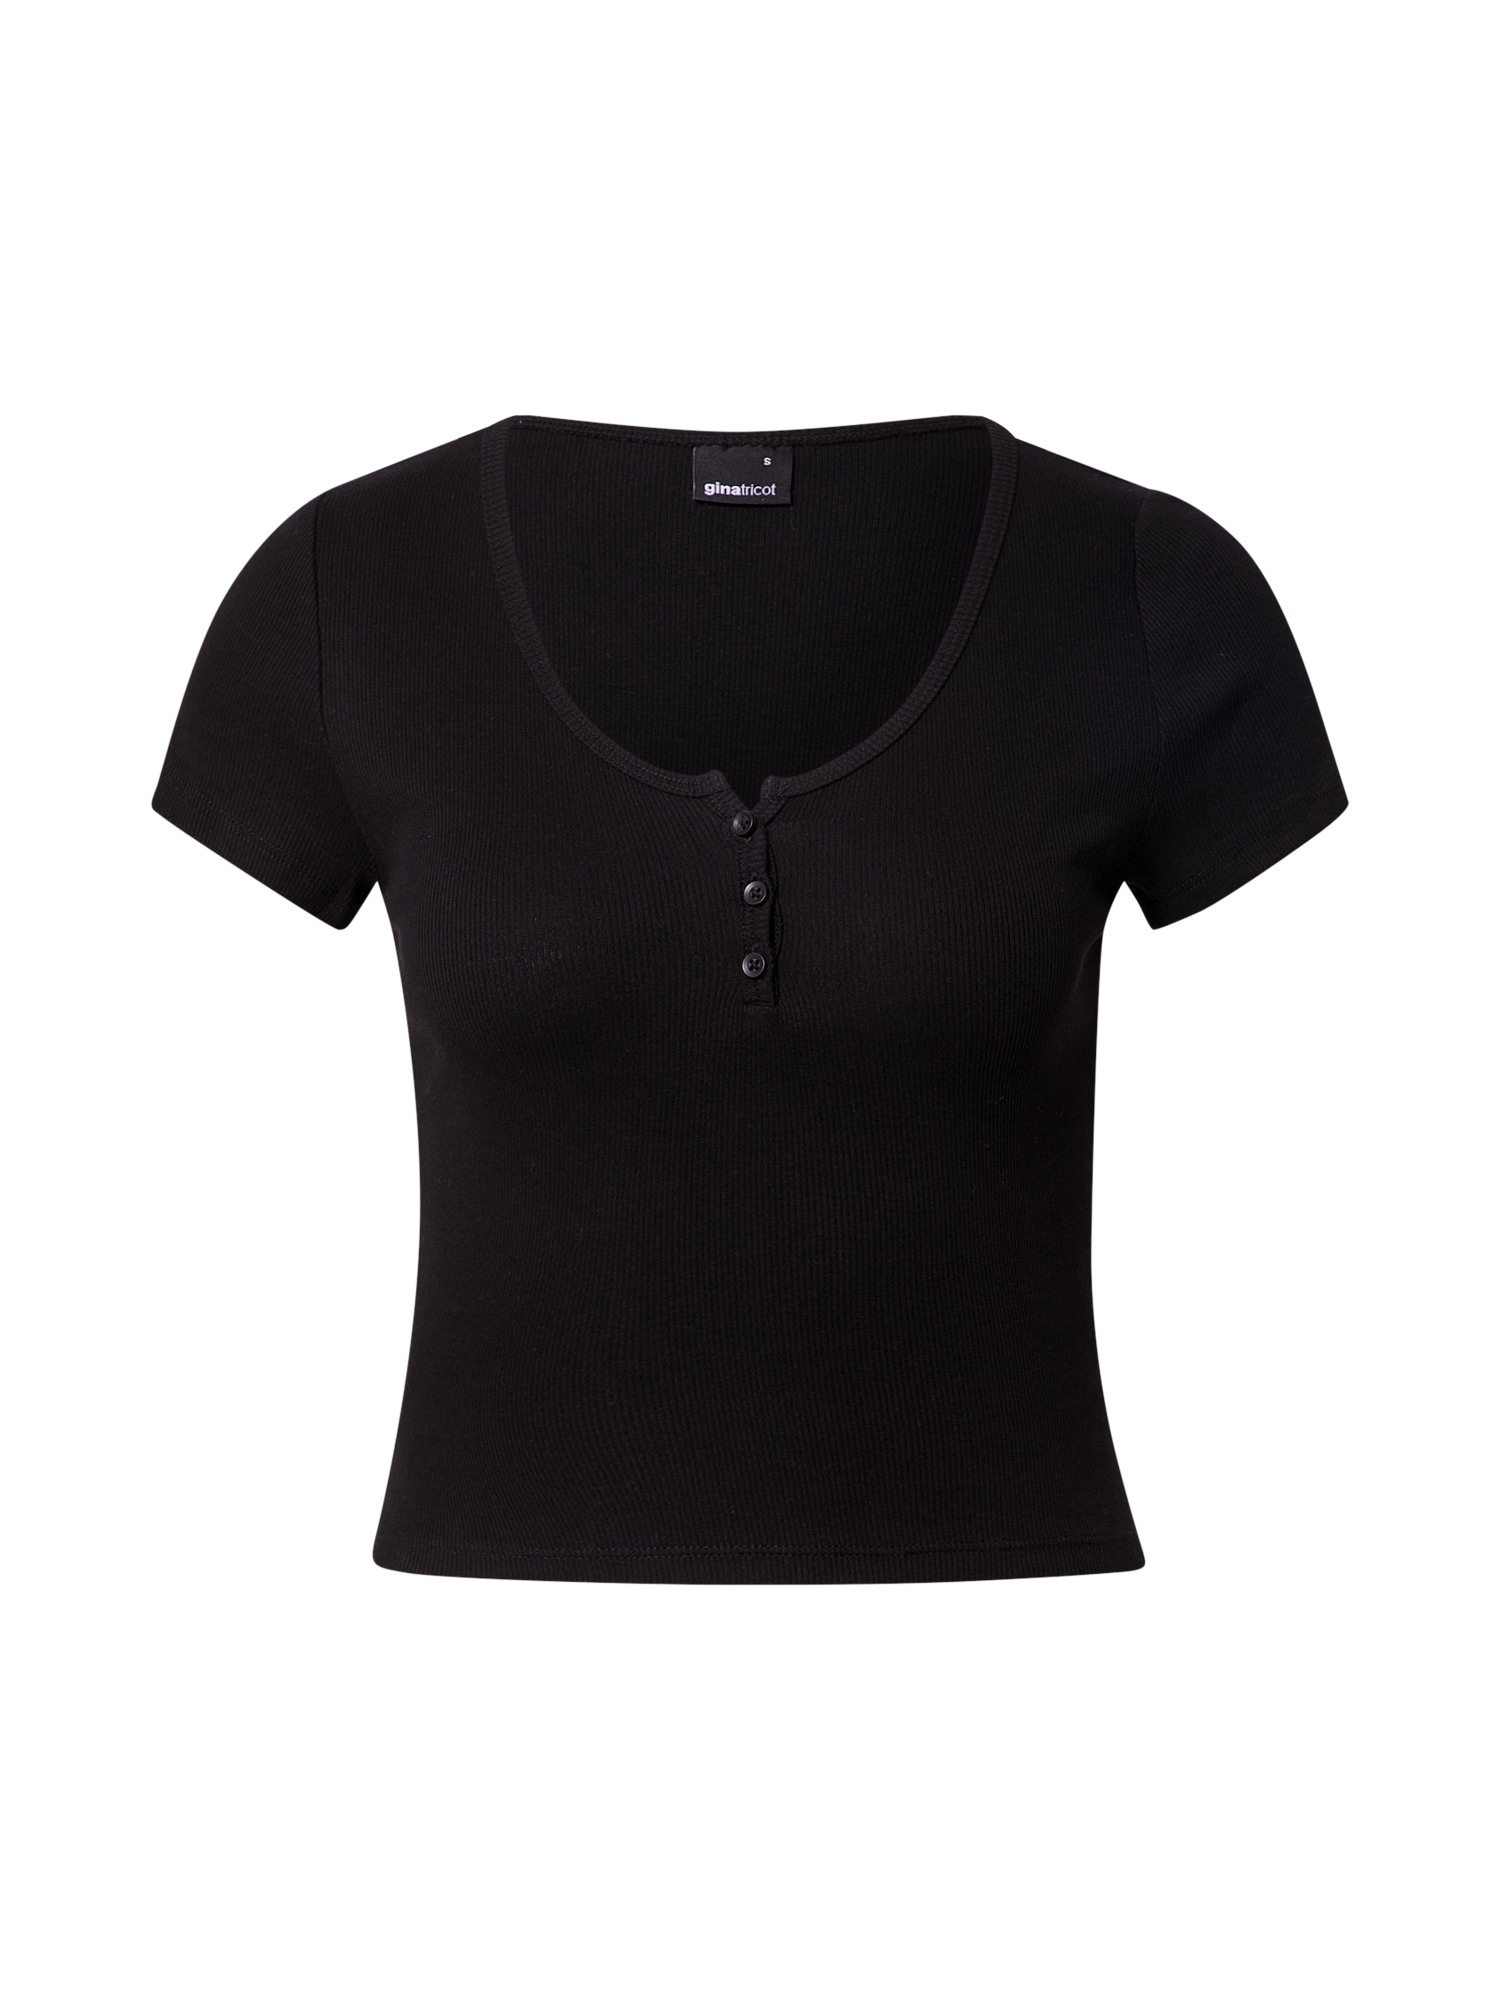 Koszulki & topy Odzież Gina Tricot Koszulka Mimmi w kolorze Czarnym 